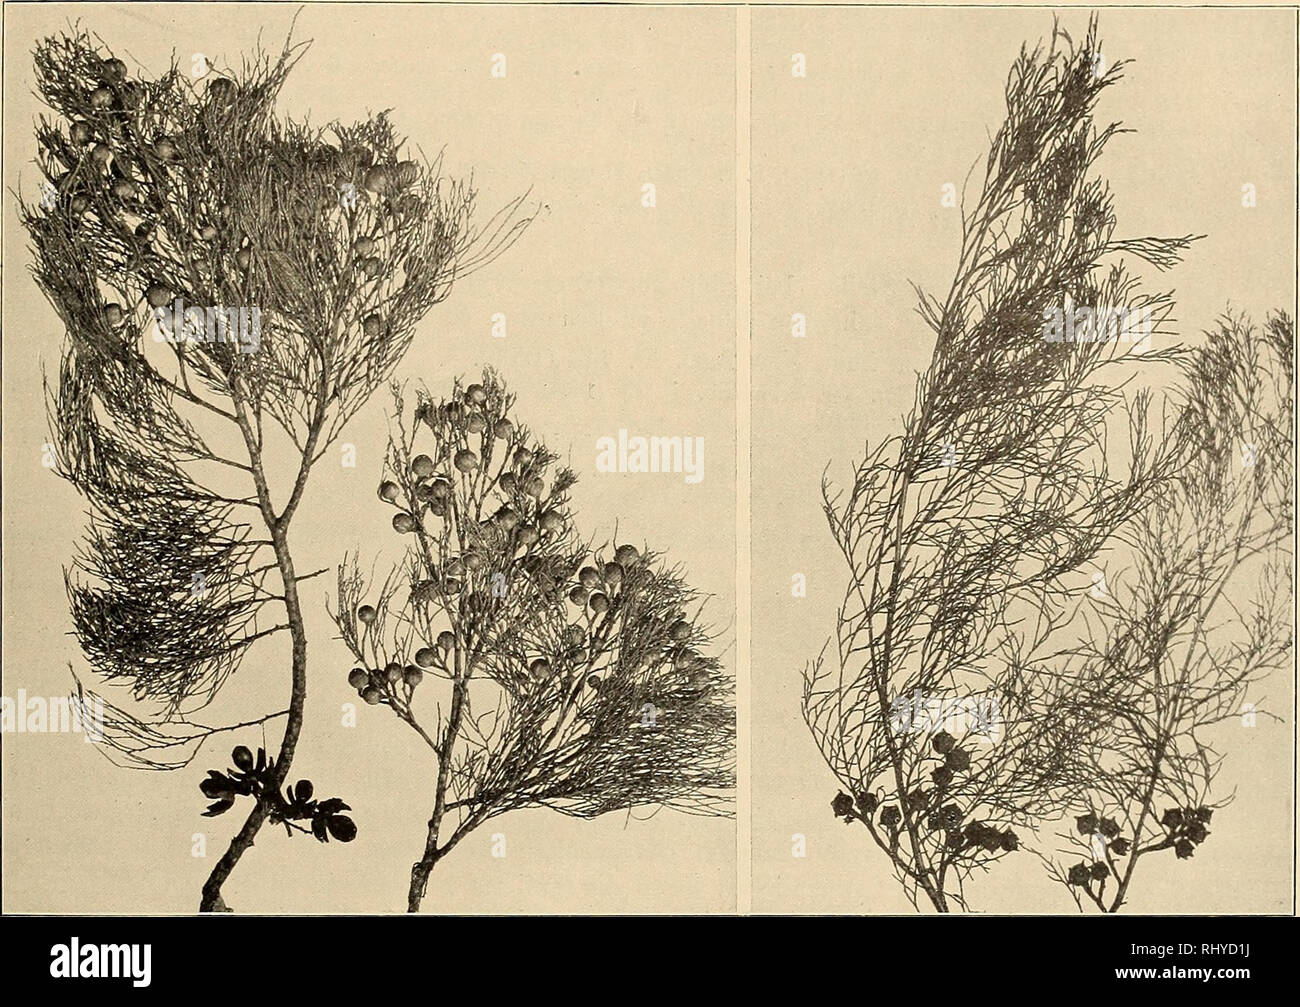 . Beiträge zur Flora und Pflanzengeographie Australiens. Botany. — 249 — Frenela rhomboidea Endl. Syn. Conif. 36 (1847), Parlat. in DC. Prodr. XVI. 2, p. 447 (1868), Benth. Fl. Austr. VI. 237 (1873), J. H. Maid. Usef. PI. Aust. 543 (1889), Turner in Proc. Linn. Soc. N. S.Wales XXVIII. 302 (1903). Abbildung: Textfig. 61, rechts. Geogr. Verbreitung: Queensland, N.S.Wales, Victoria, South Australia, Tasmanien. Süd-Queensland: Stradbroke Island (Domin, IV. 1910), häufig.. Fig. 61. Links: Callitris eolumellaris F. v. Muell., rechts: C. eupressiformis Venten., beide nach Exemplaren vom Stradbroke Is Stock Photo